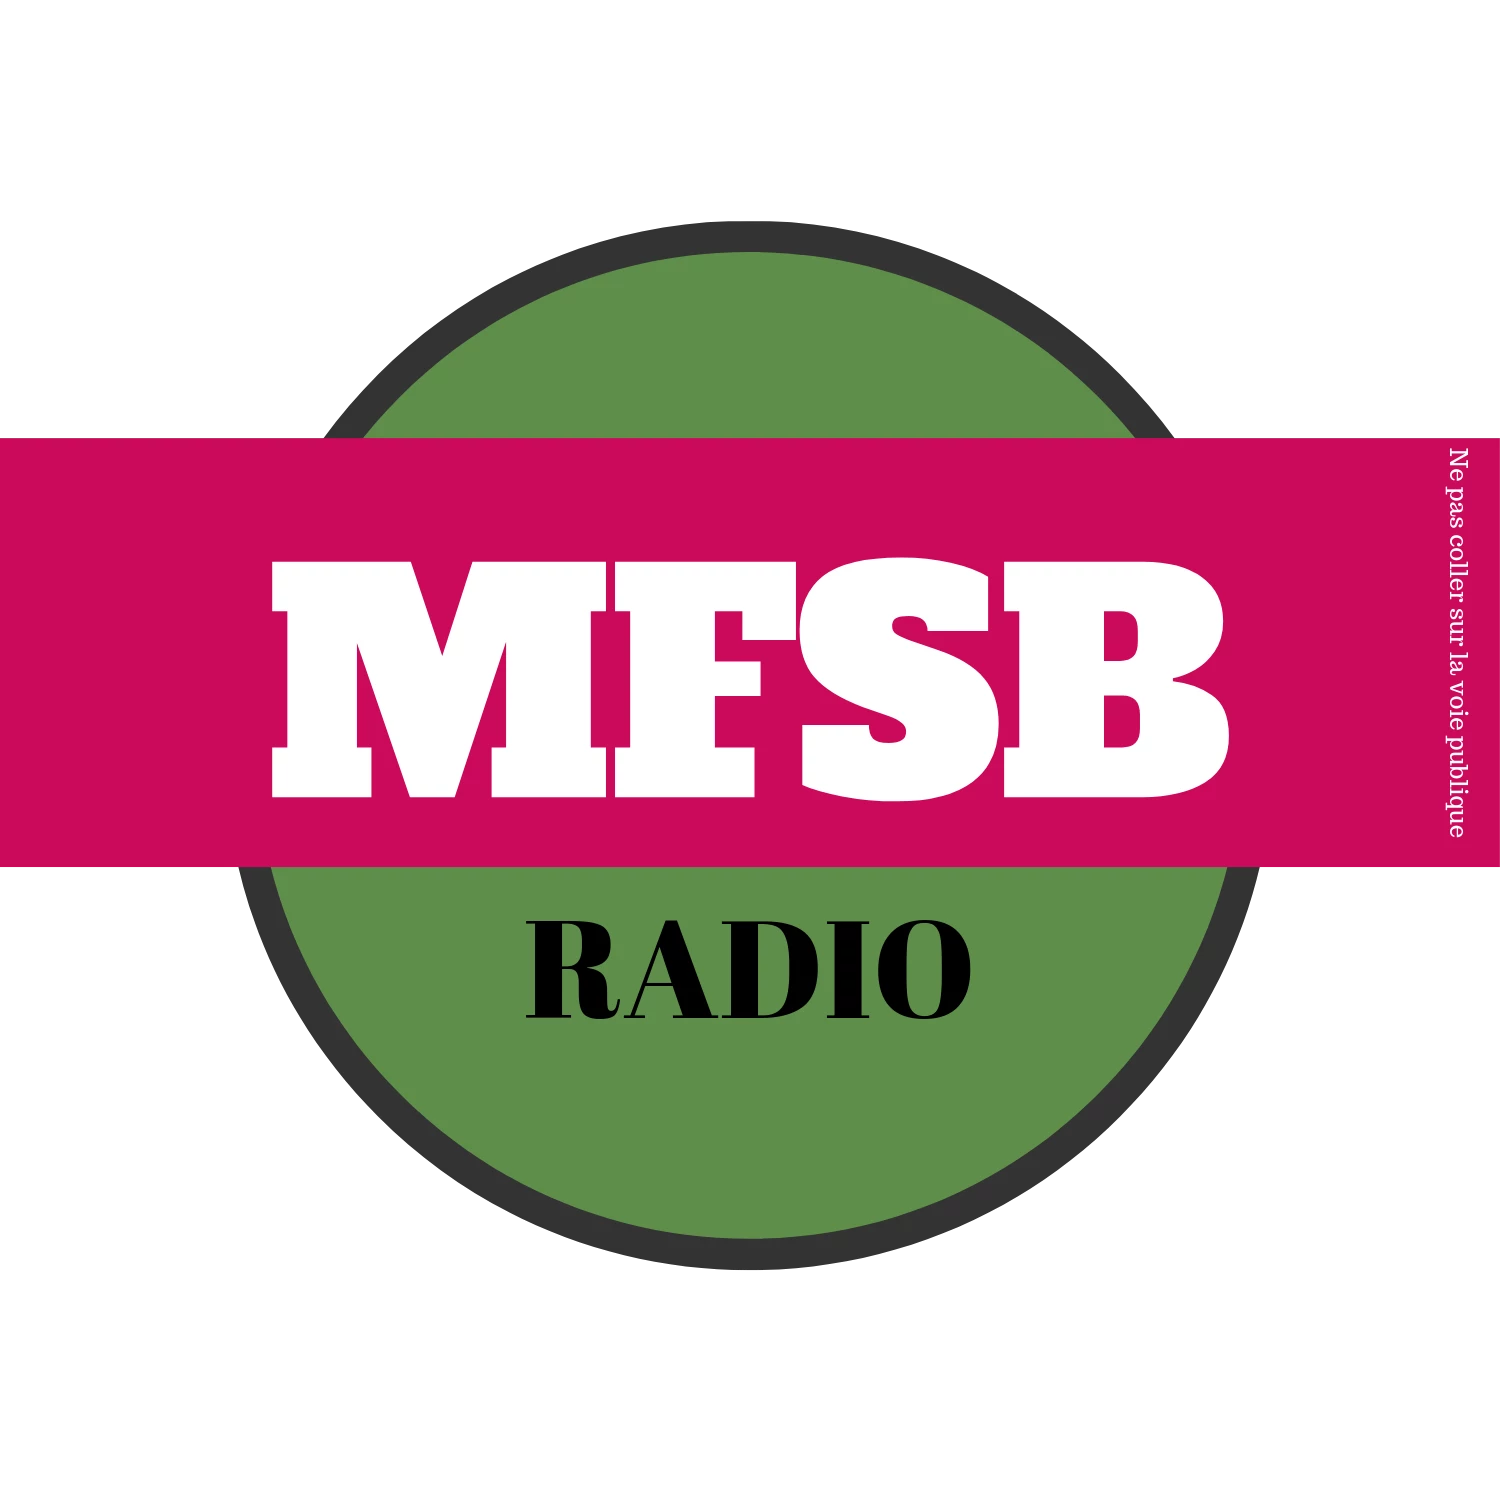 MFSB RADIO